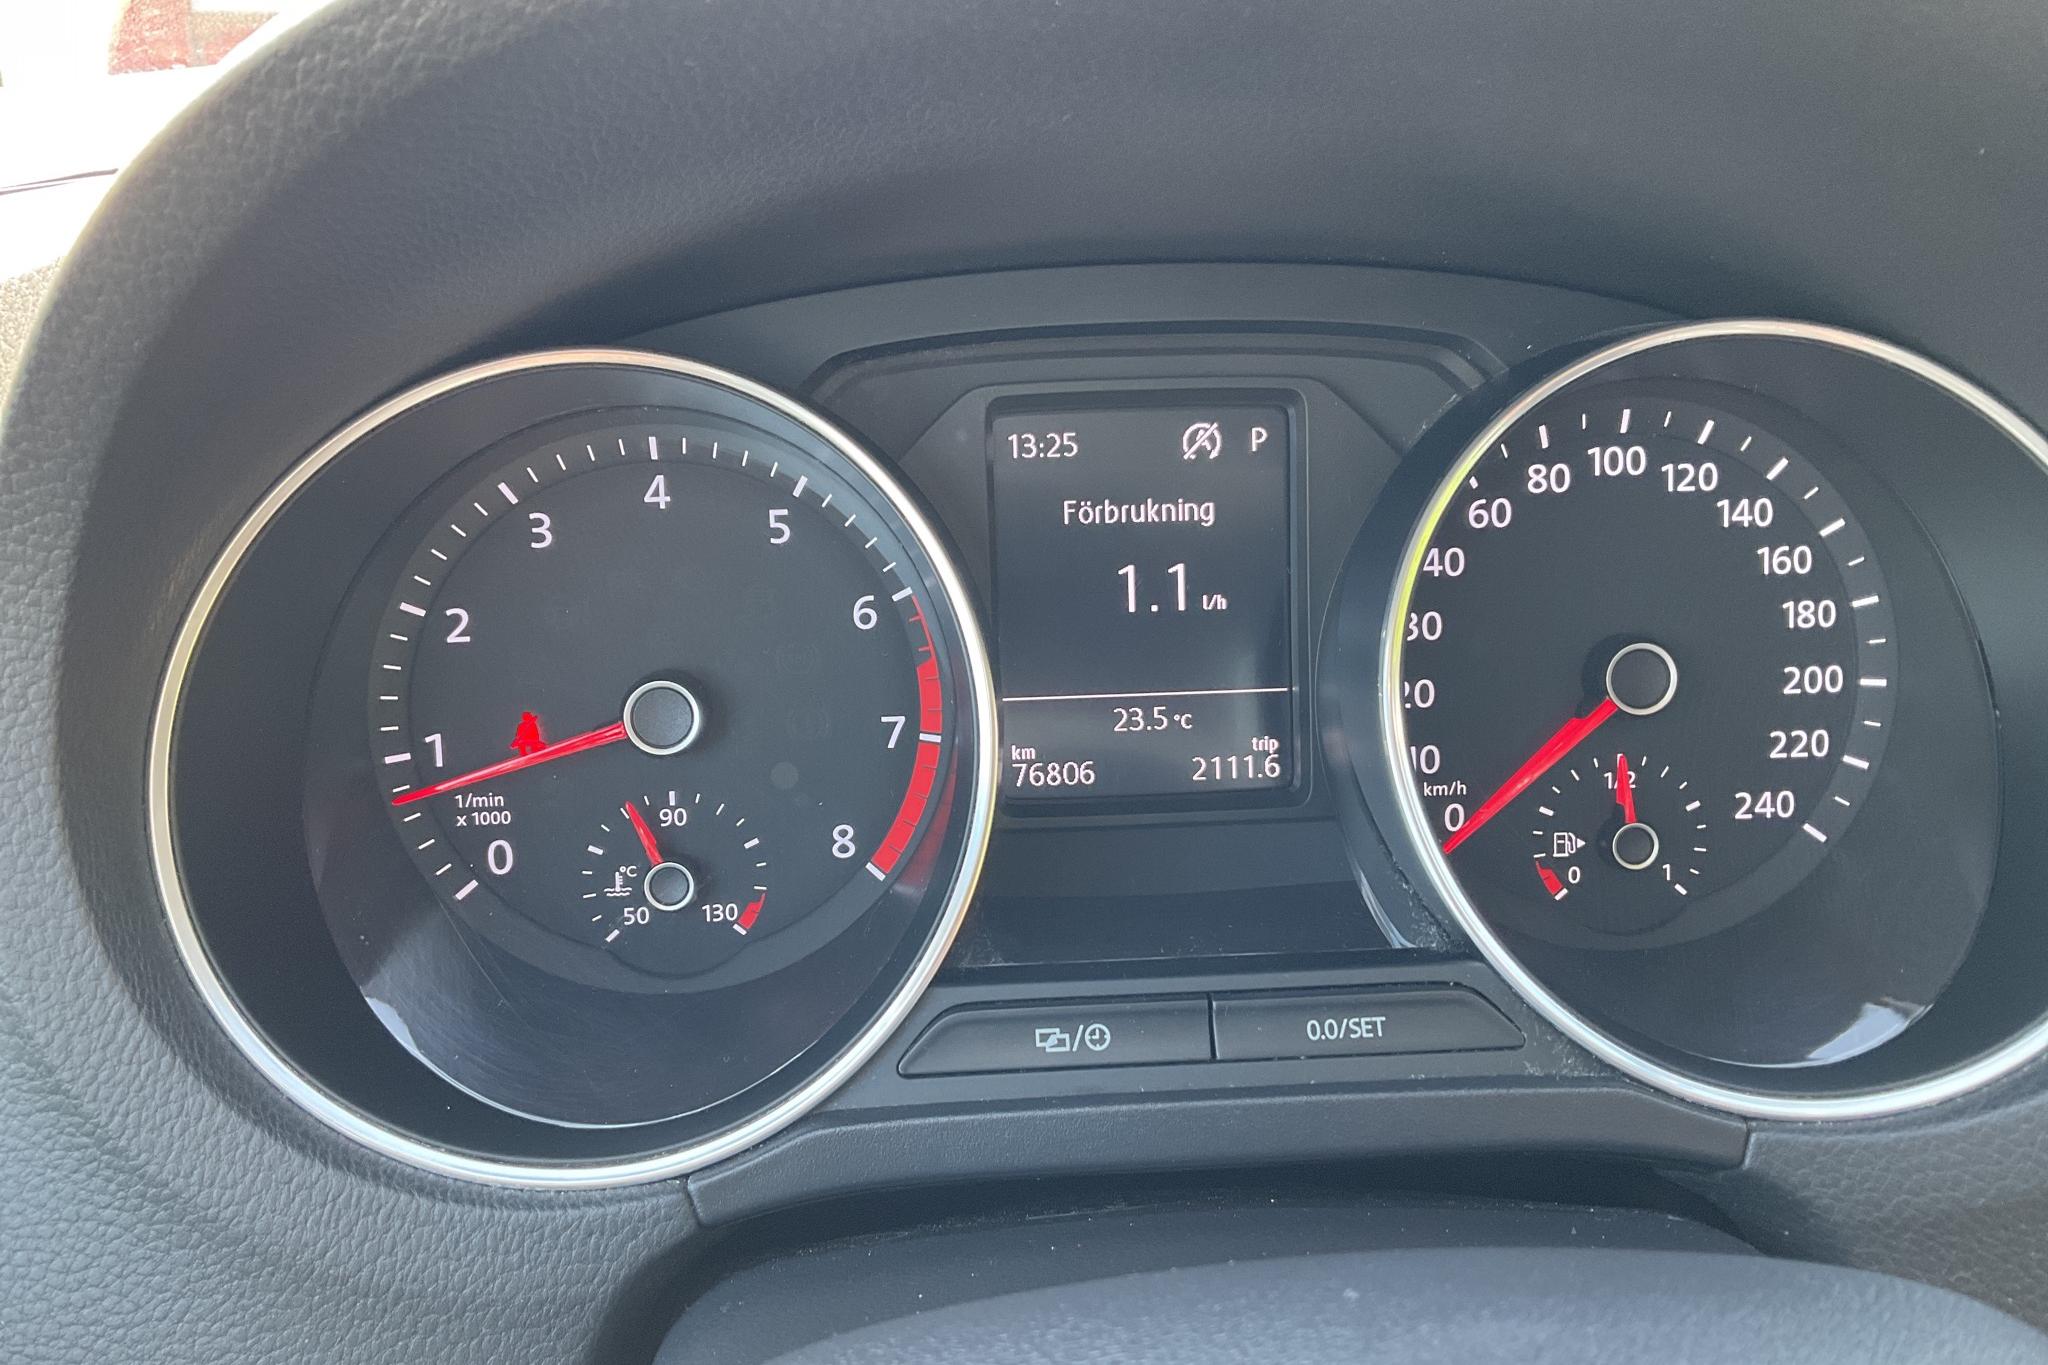 VW Polo 1.2 TSI 5dr (90hk) - 76 800 km - Automatic - silver - 2017